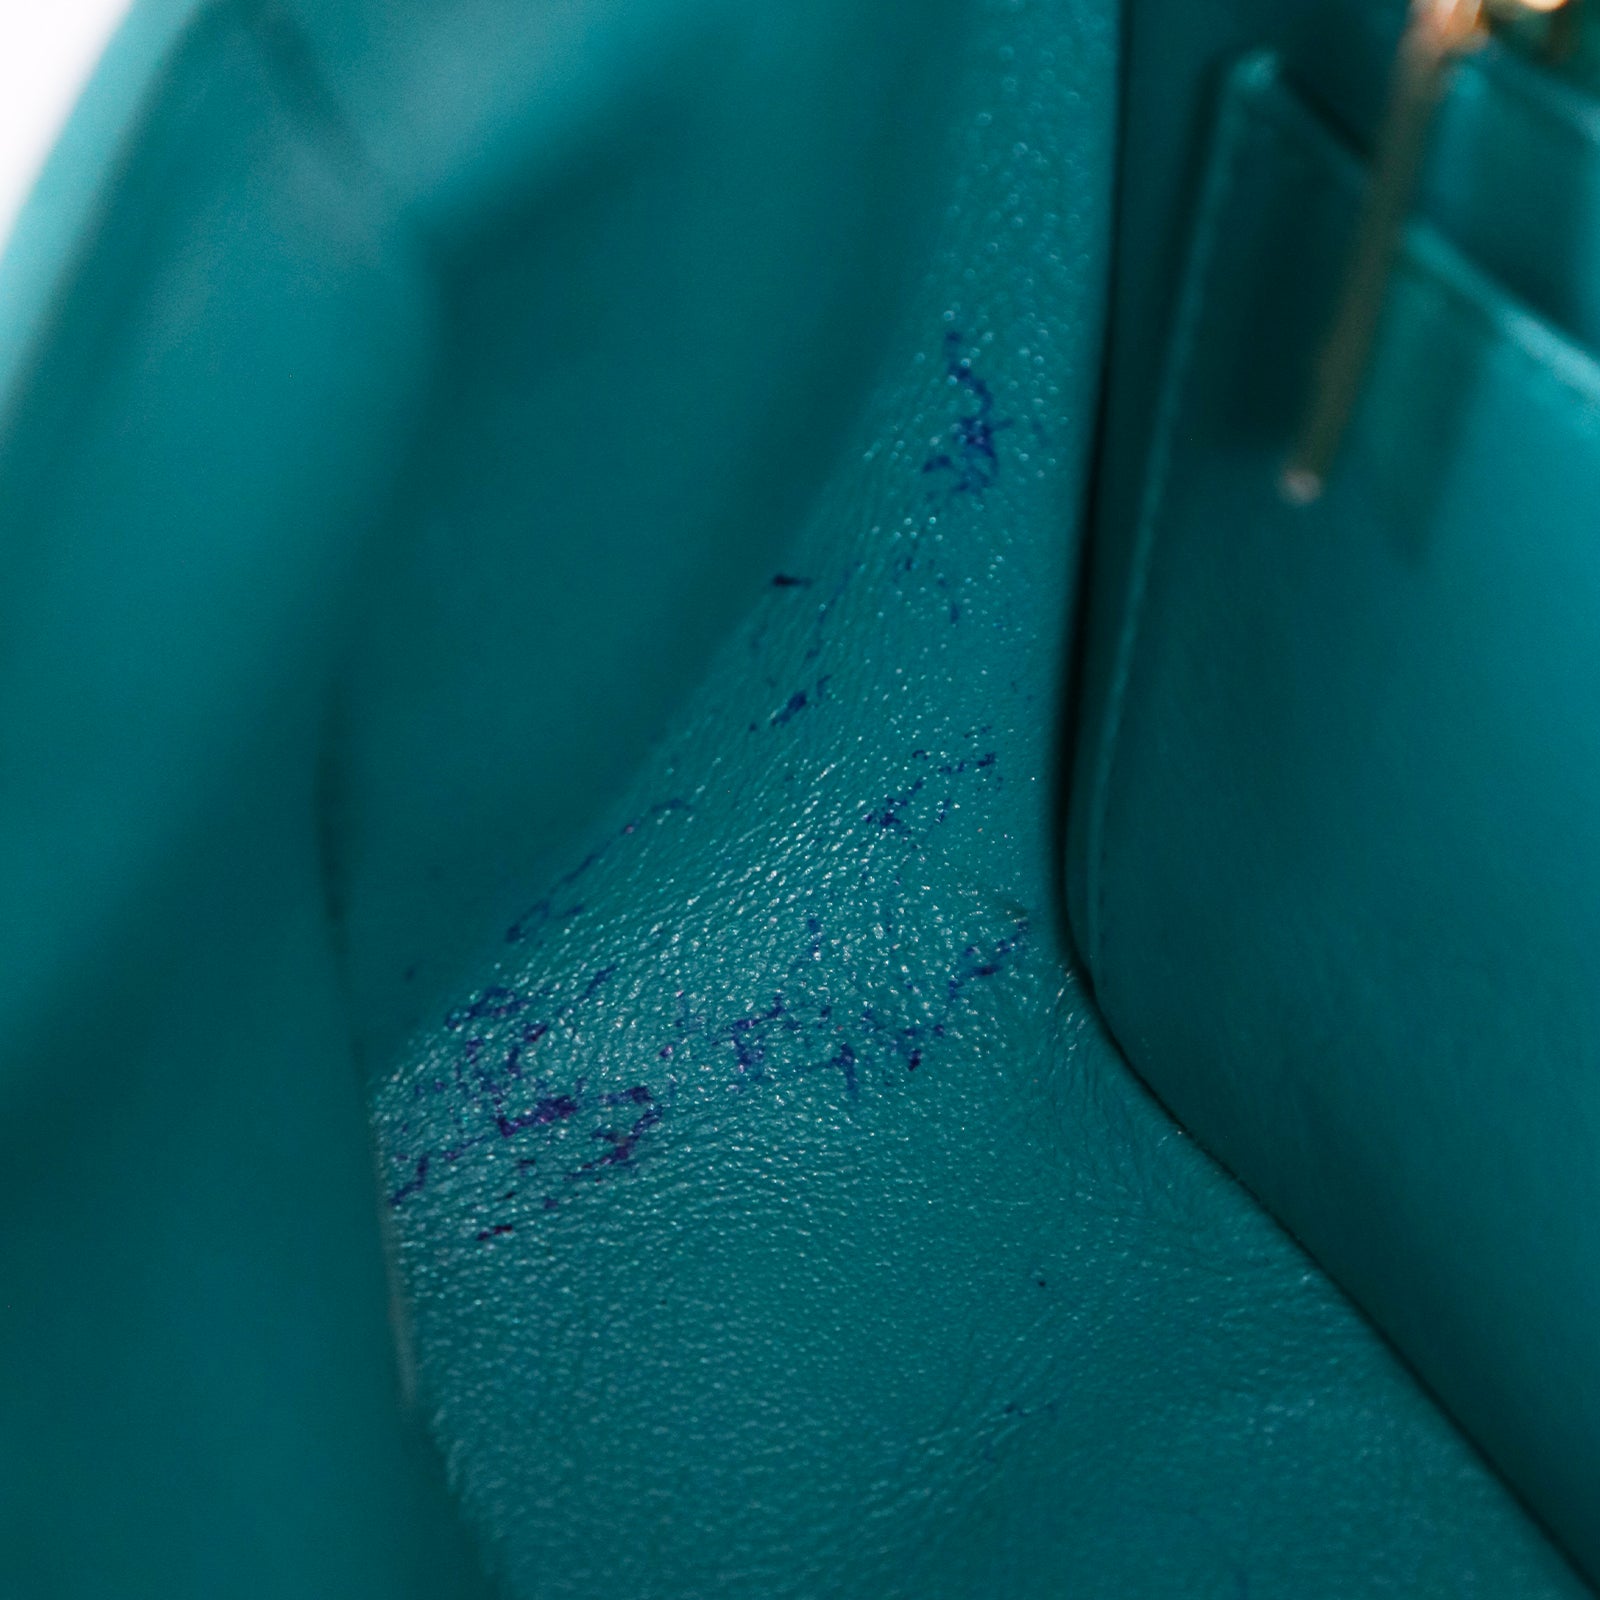 CHANEL - Sac à bandoulière Timeless mini bleu Tiffany